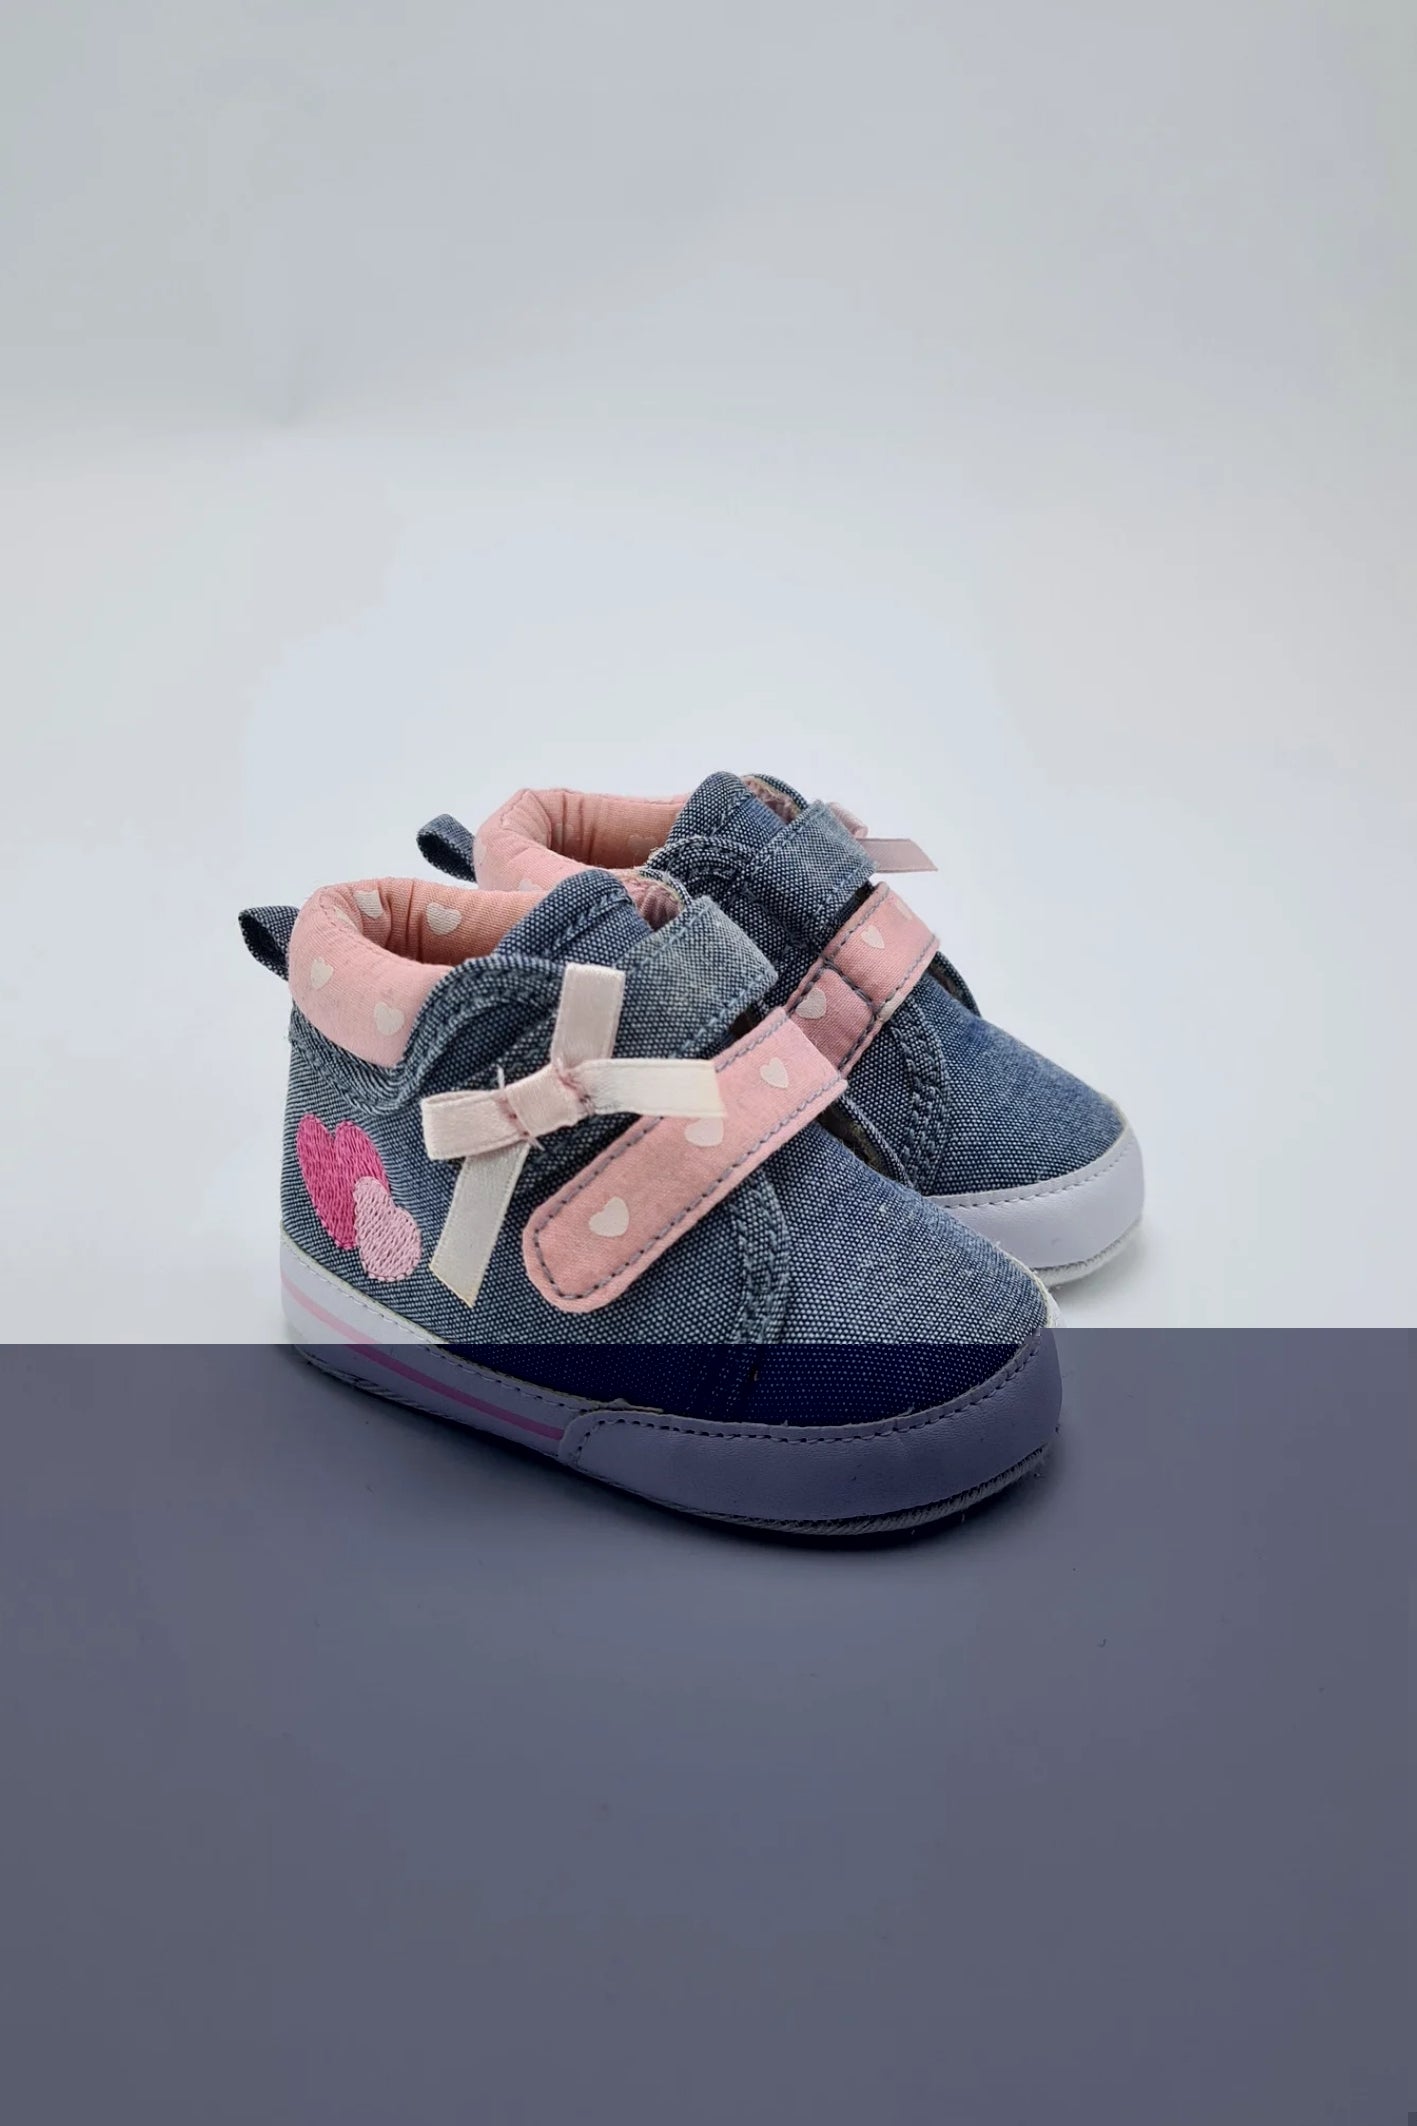 0-3 mois - Chaussures Crin pour bébé